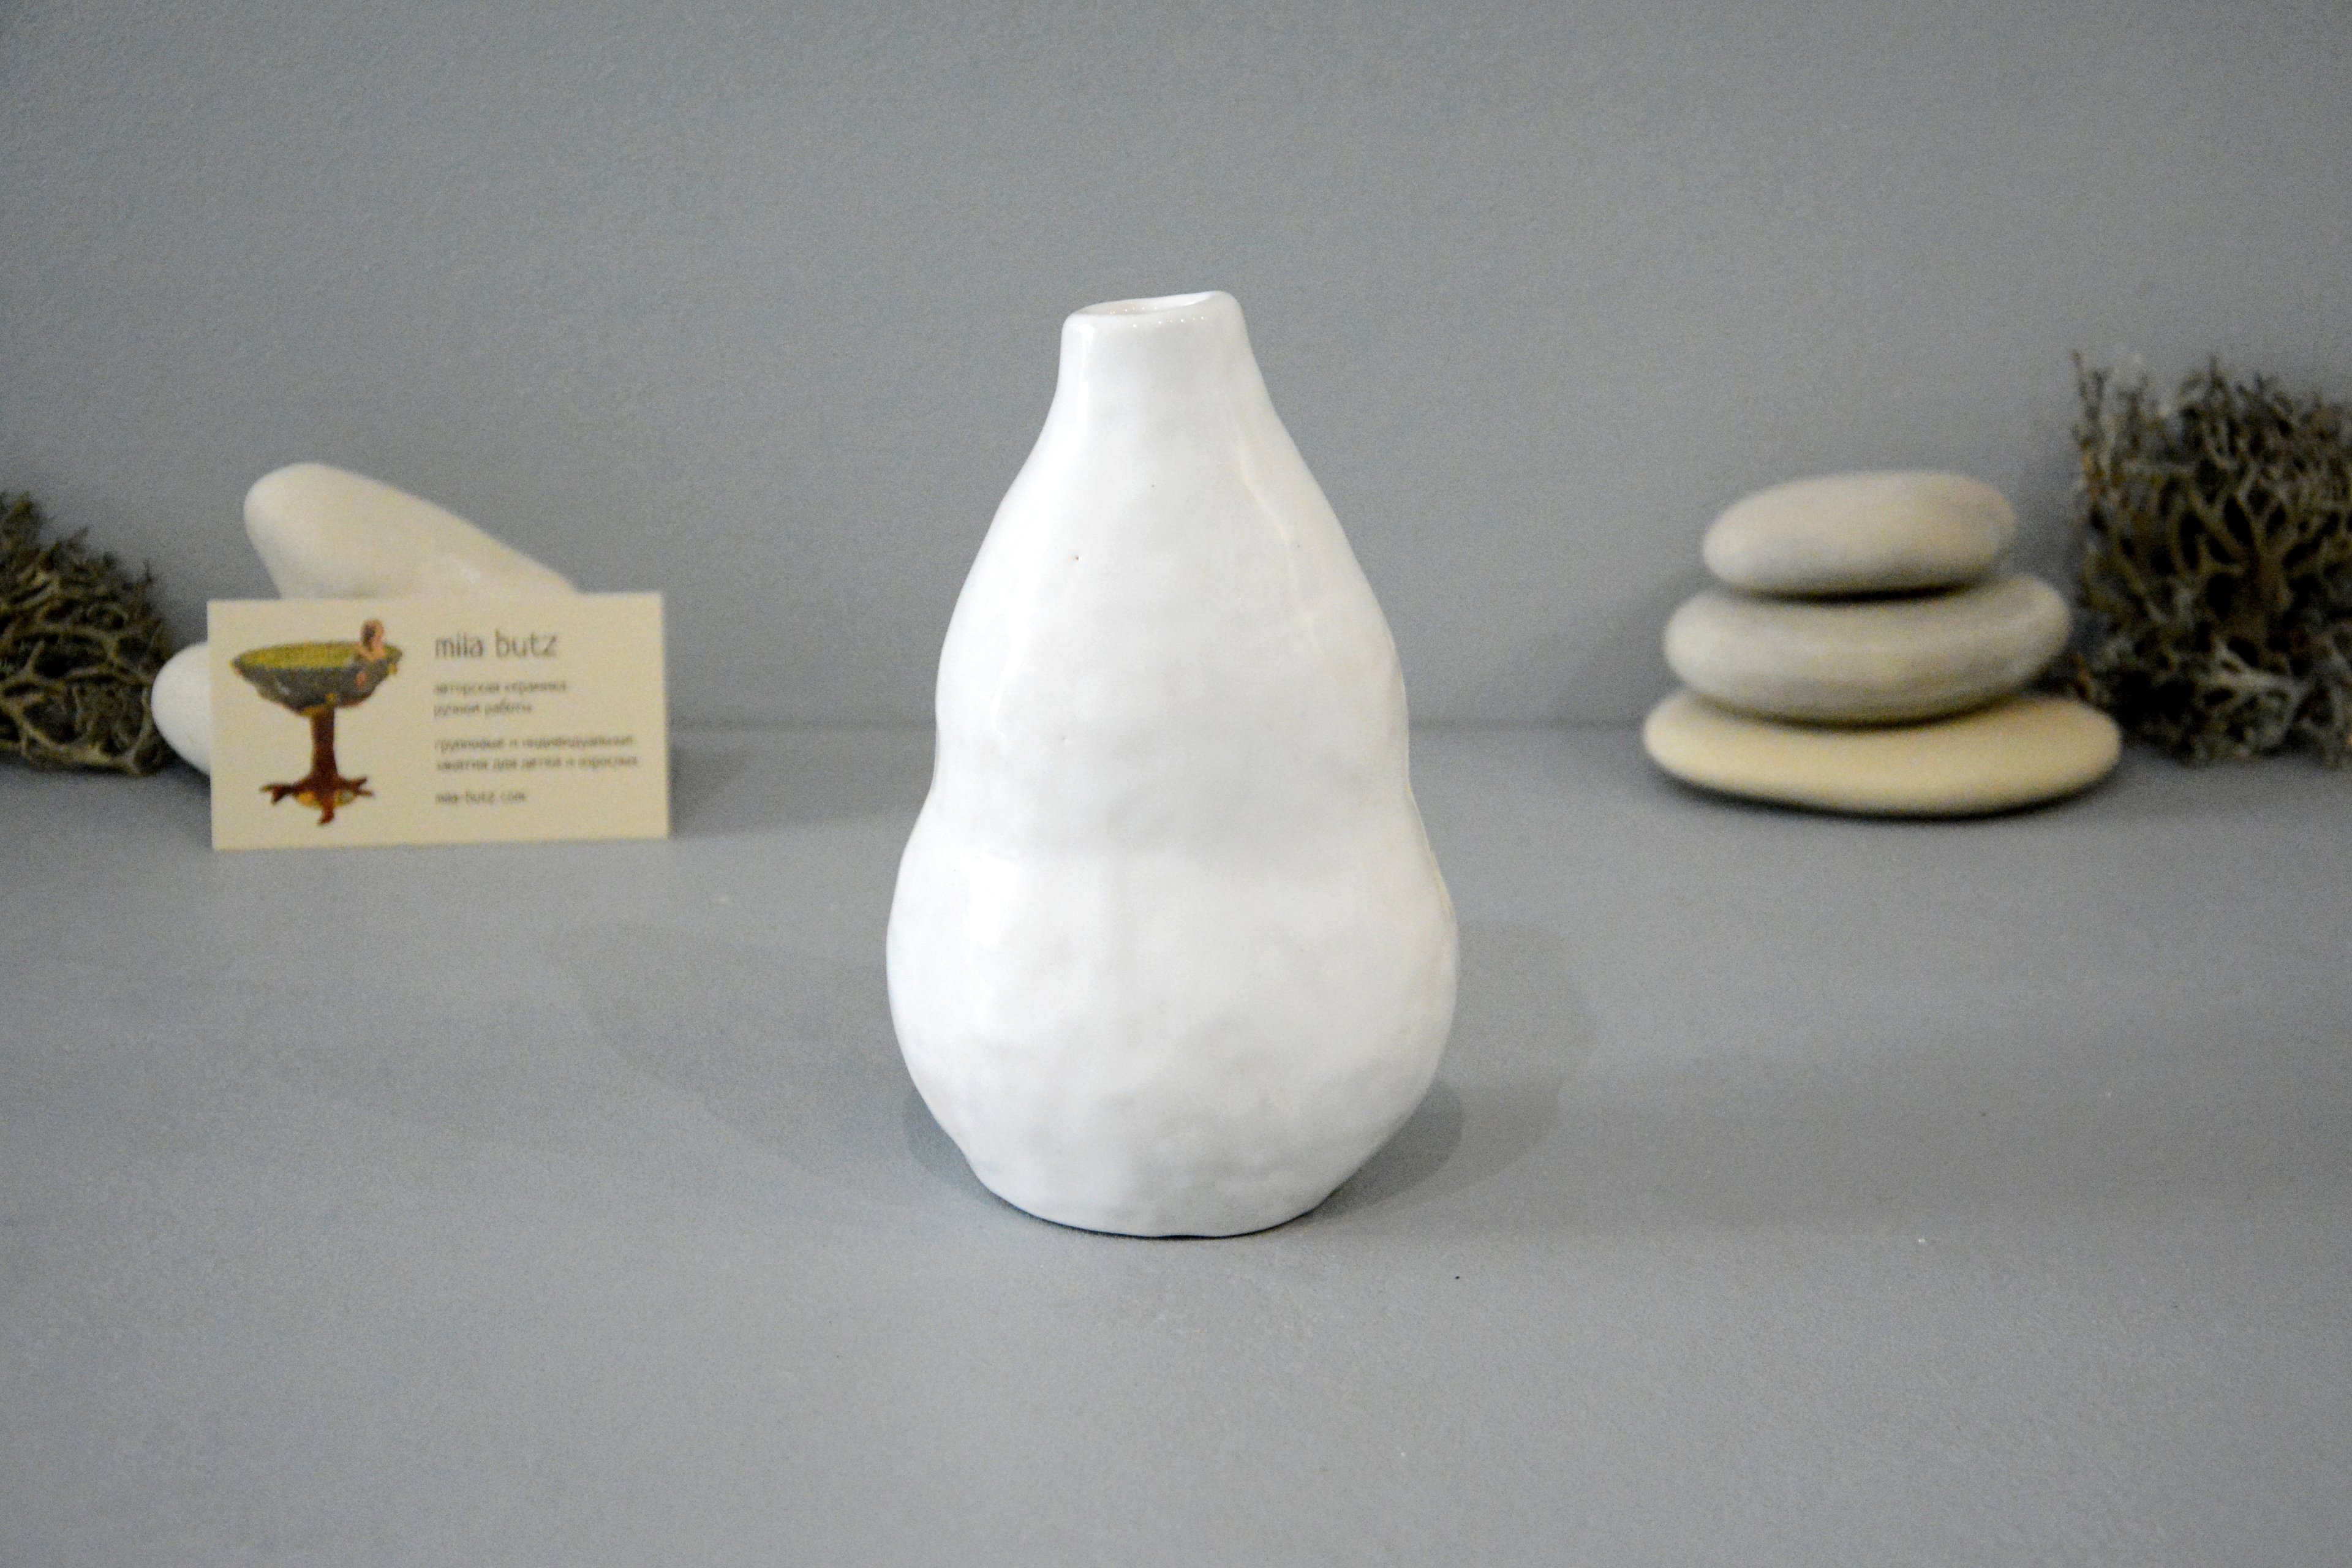 Интерьерная ваза «Эхеверия», высота - 16 см, цвет - белый. Фото 1363.